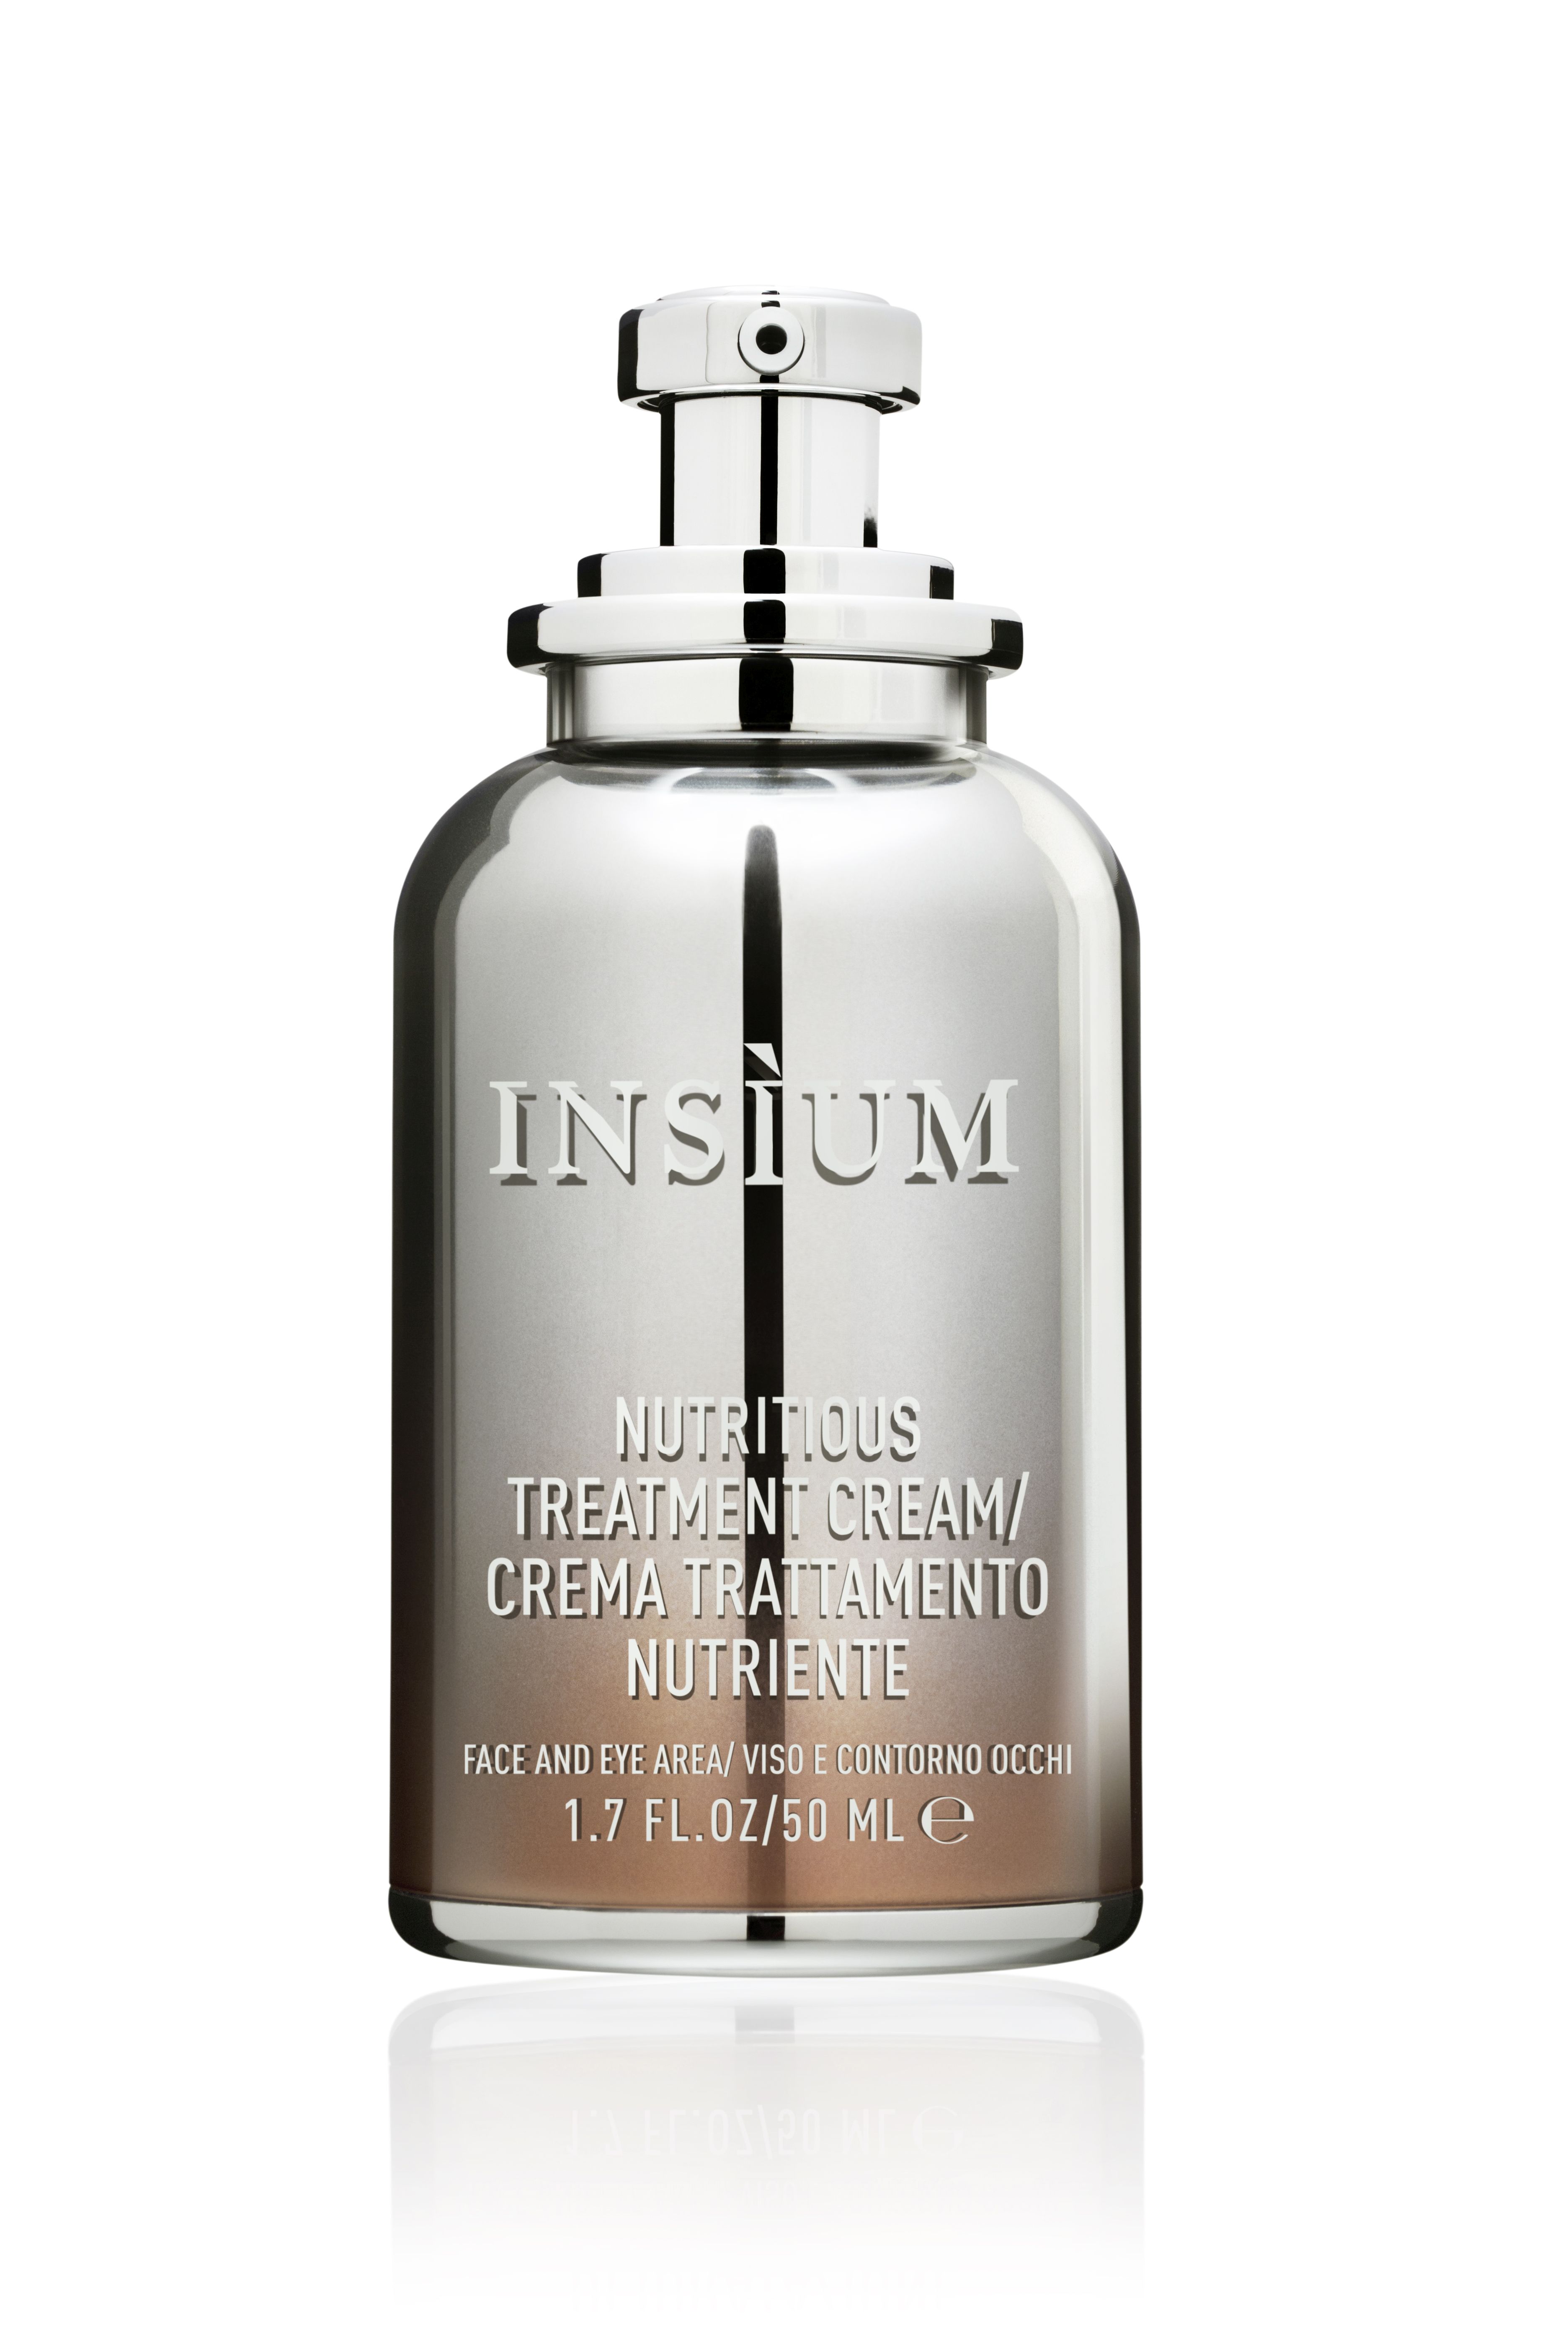 Insium - Nutritious Treatment Cream - Anti-Aging Creme 50ml 